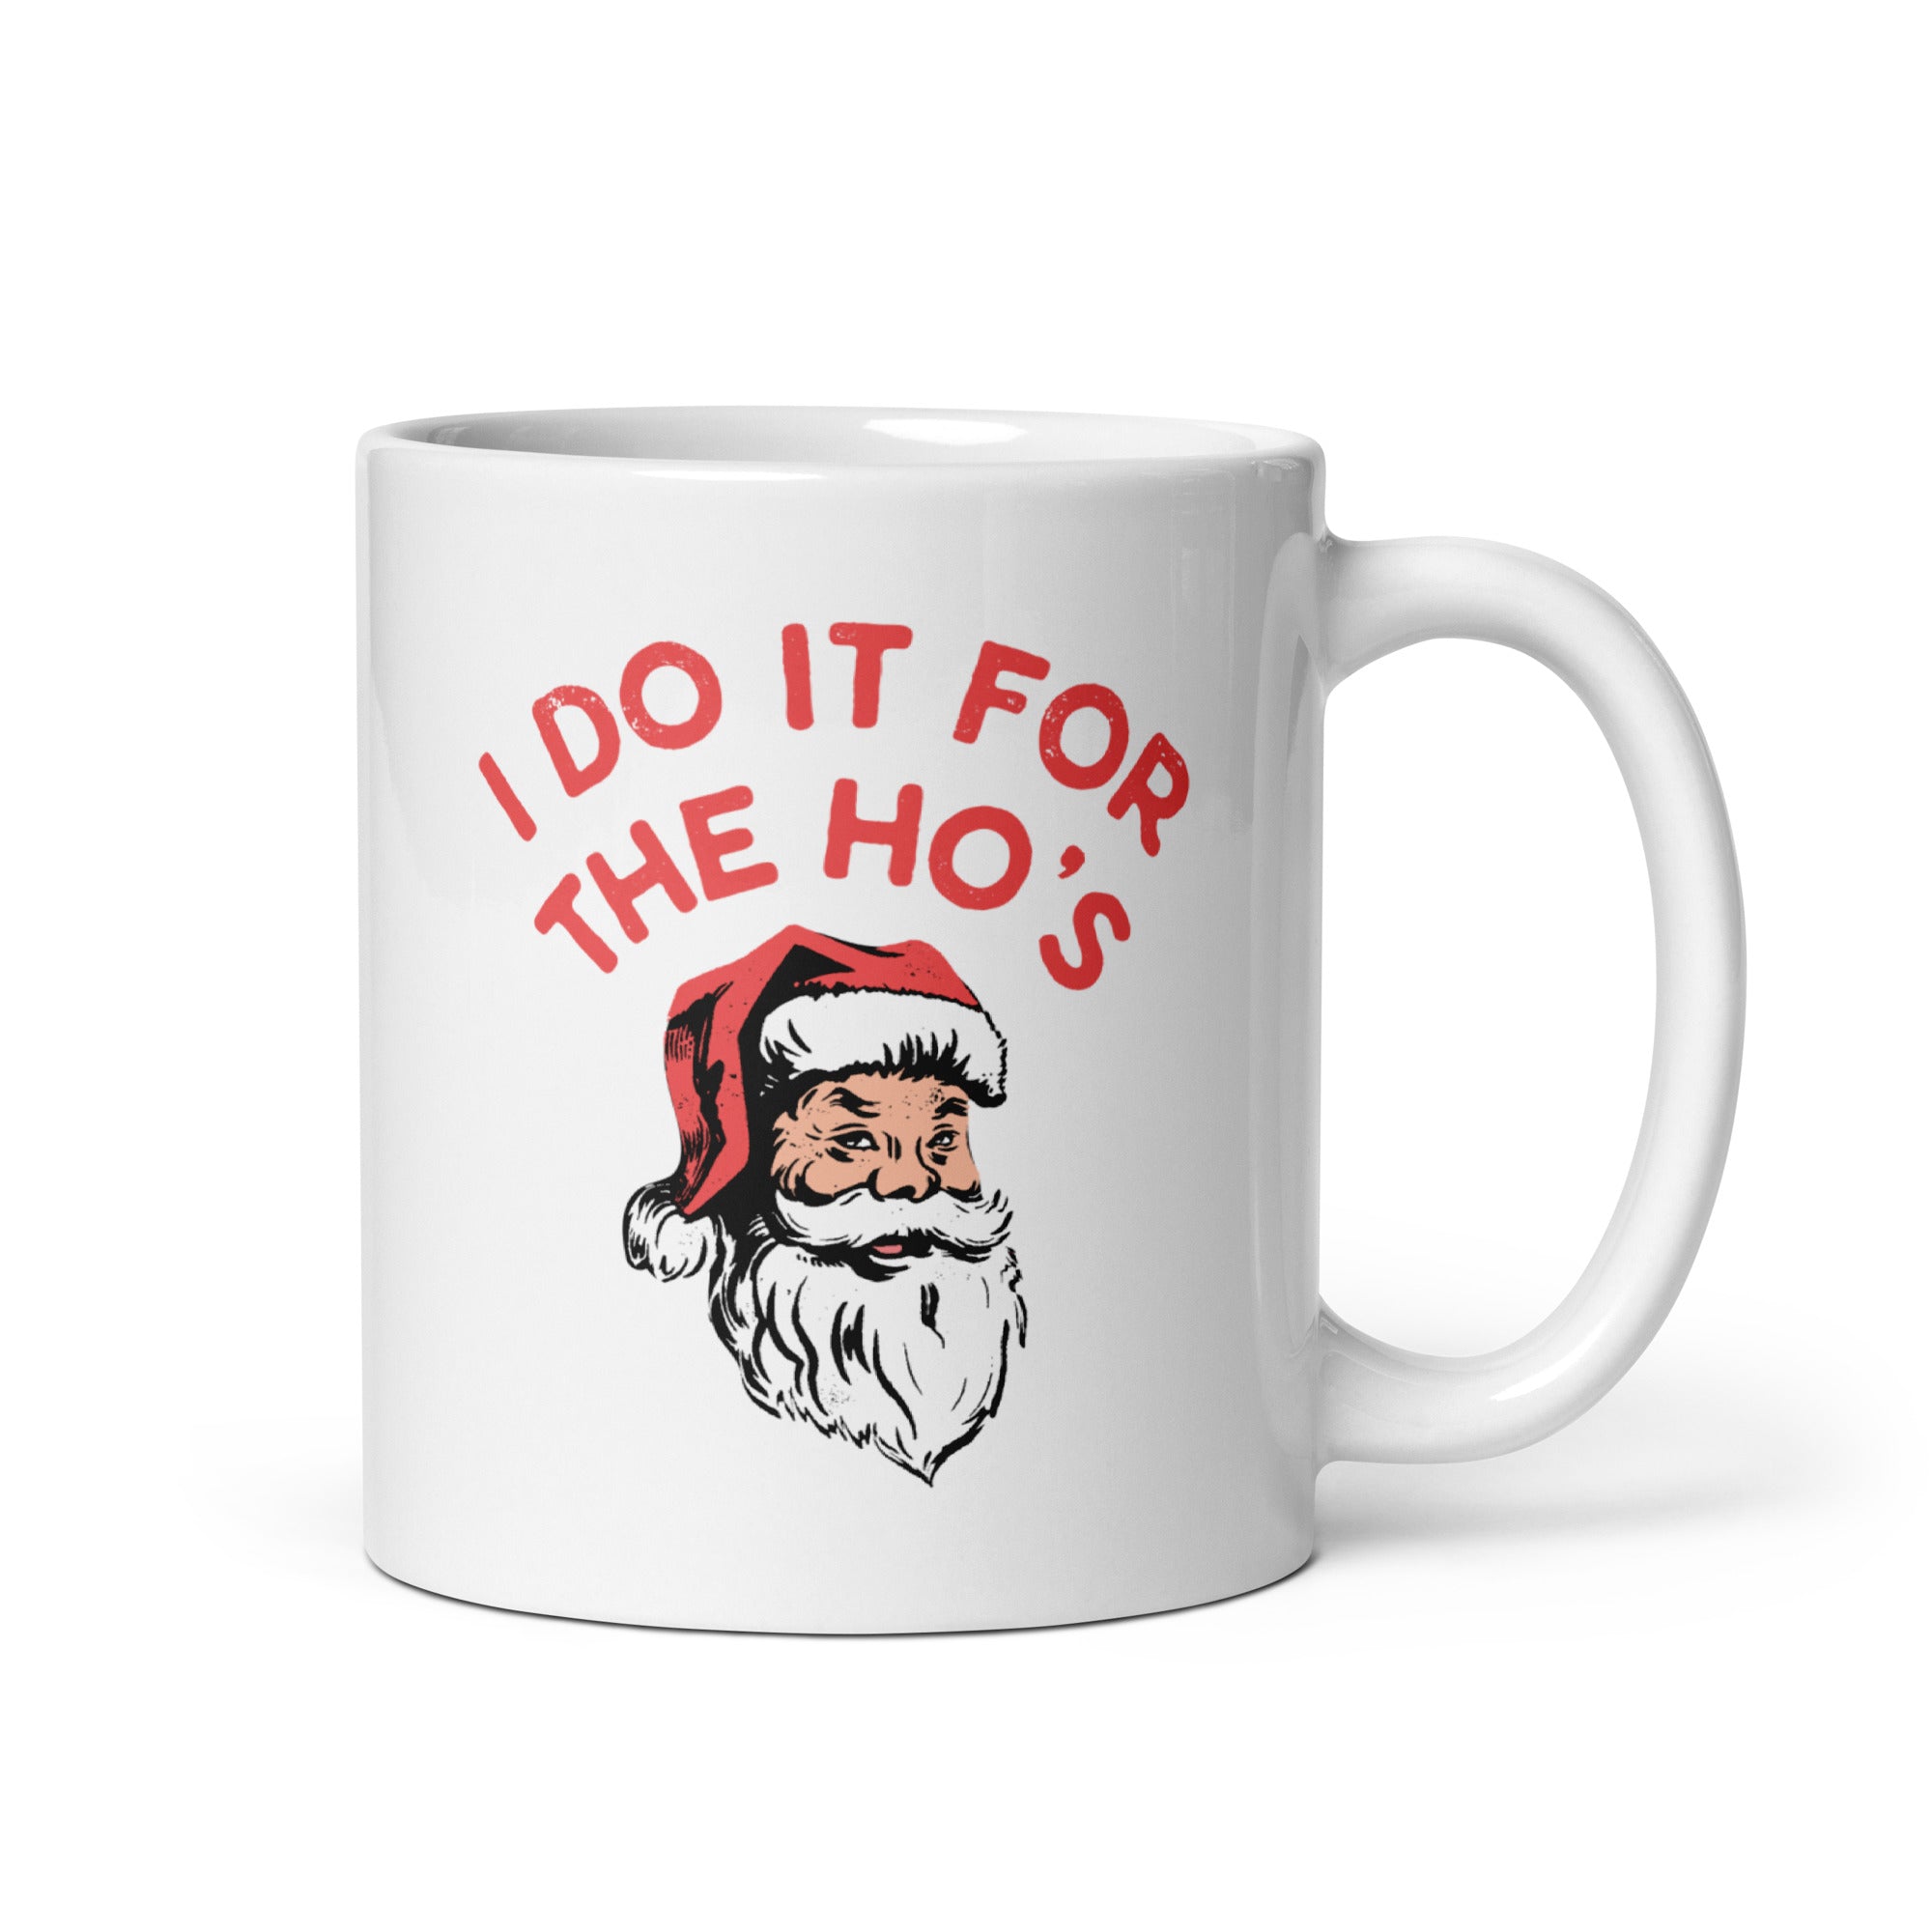 I Do it For The Ho's - 11oz Coffee Mug